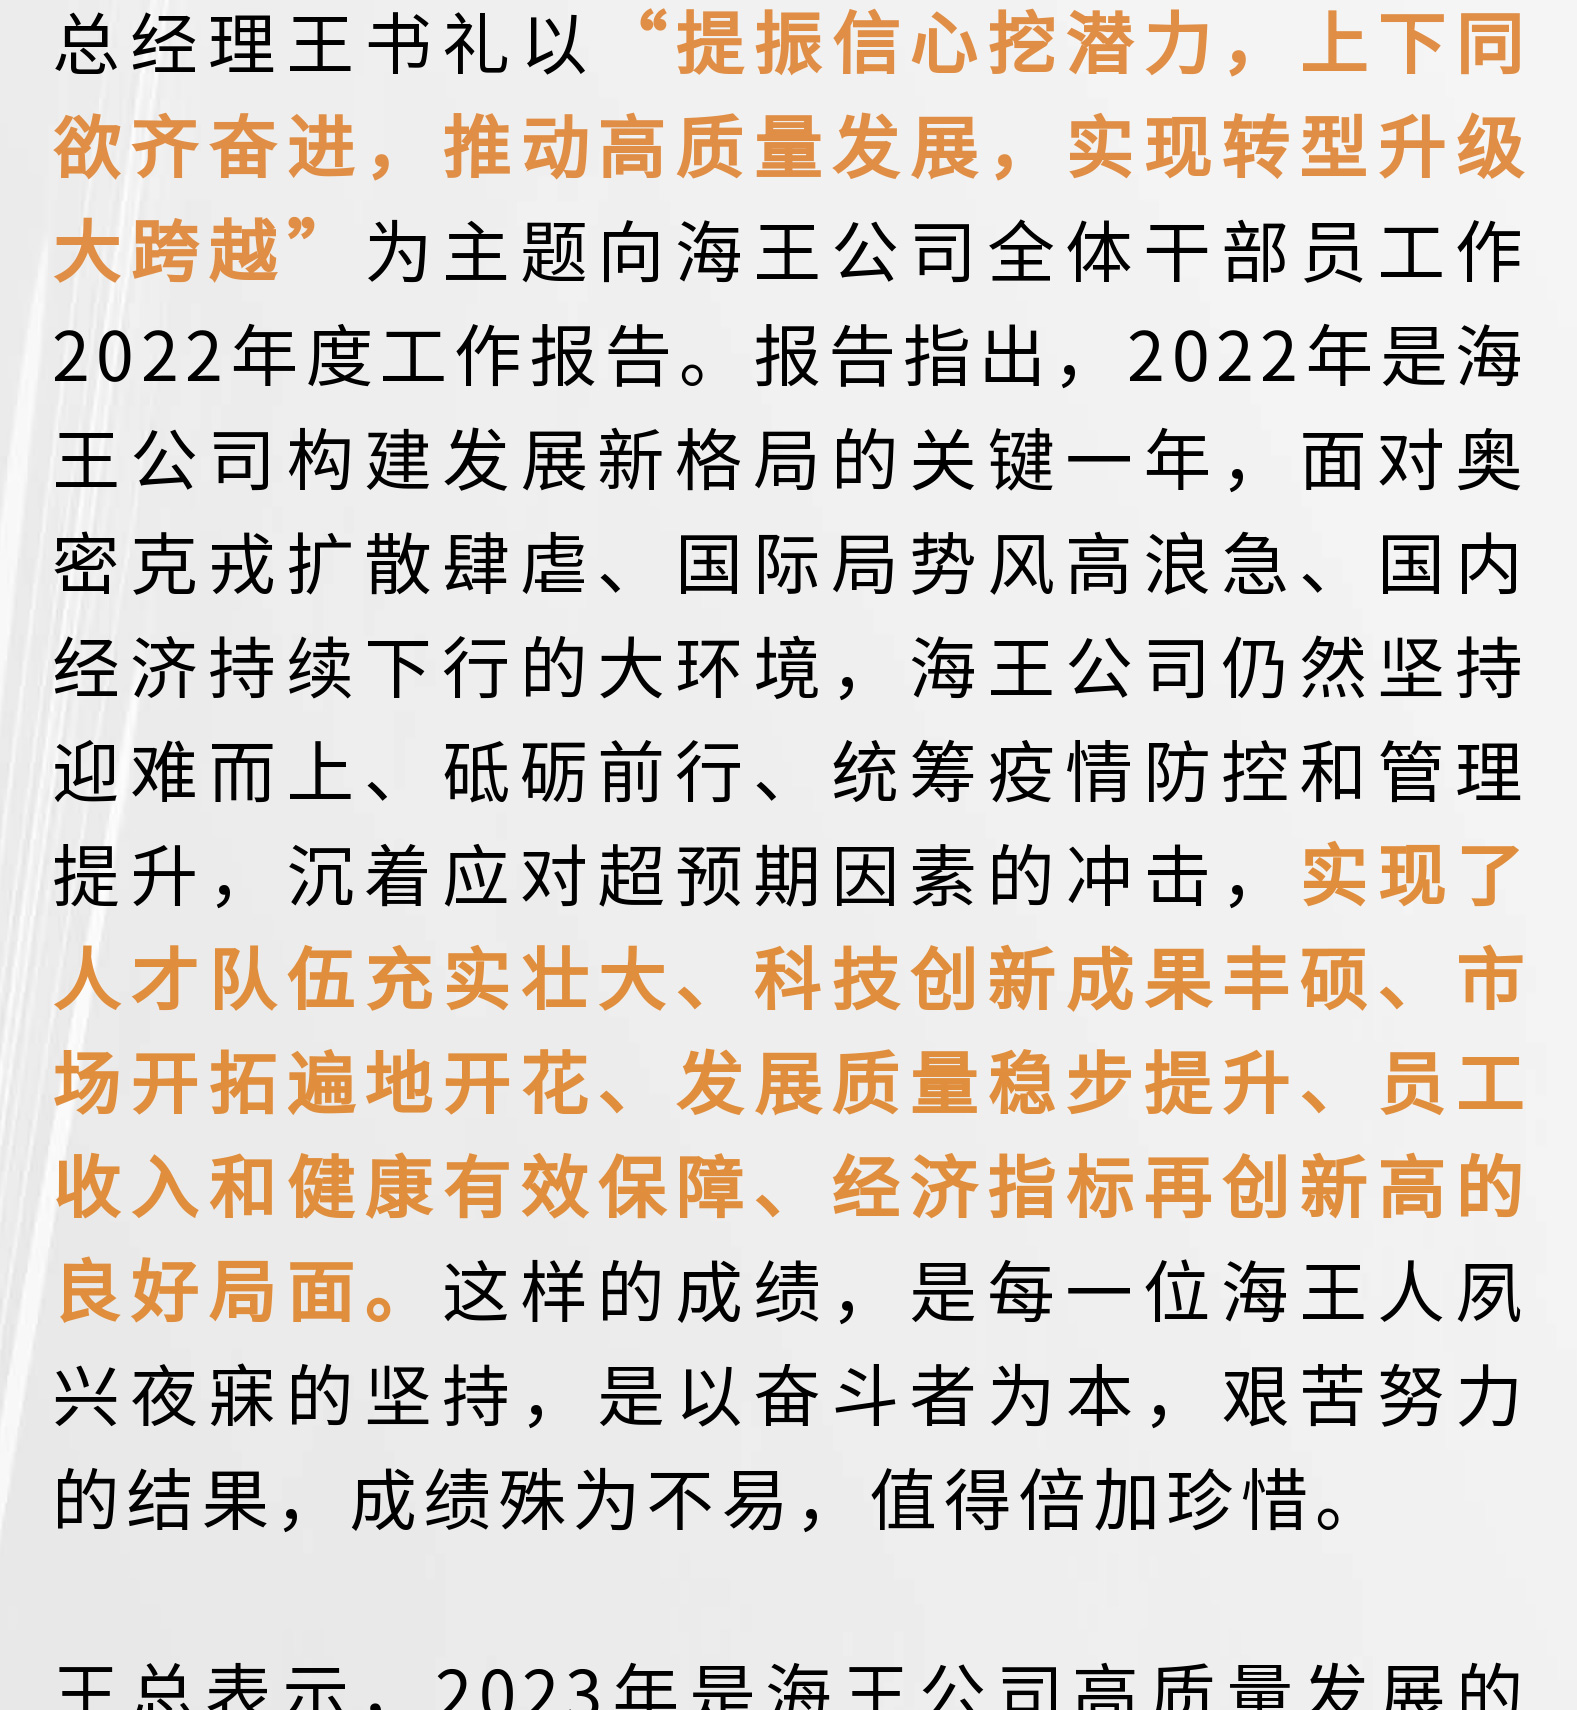 海王公司2022年度工作总结报告暨表彰大会_14.jpg